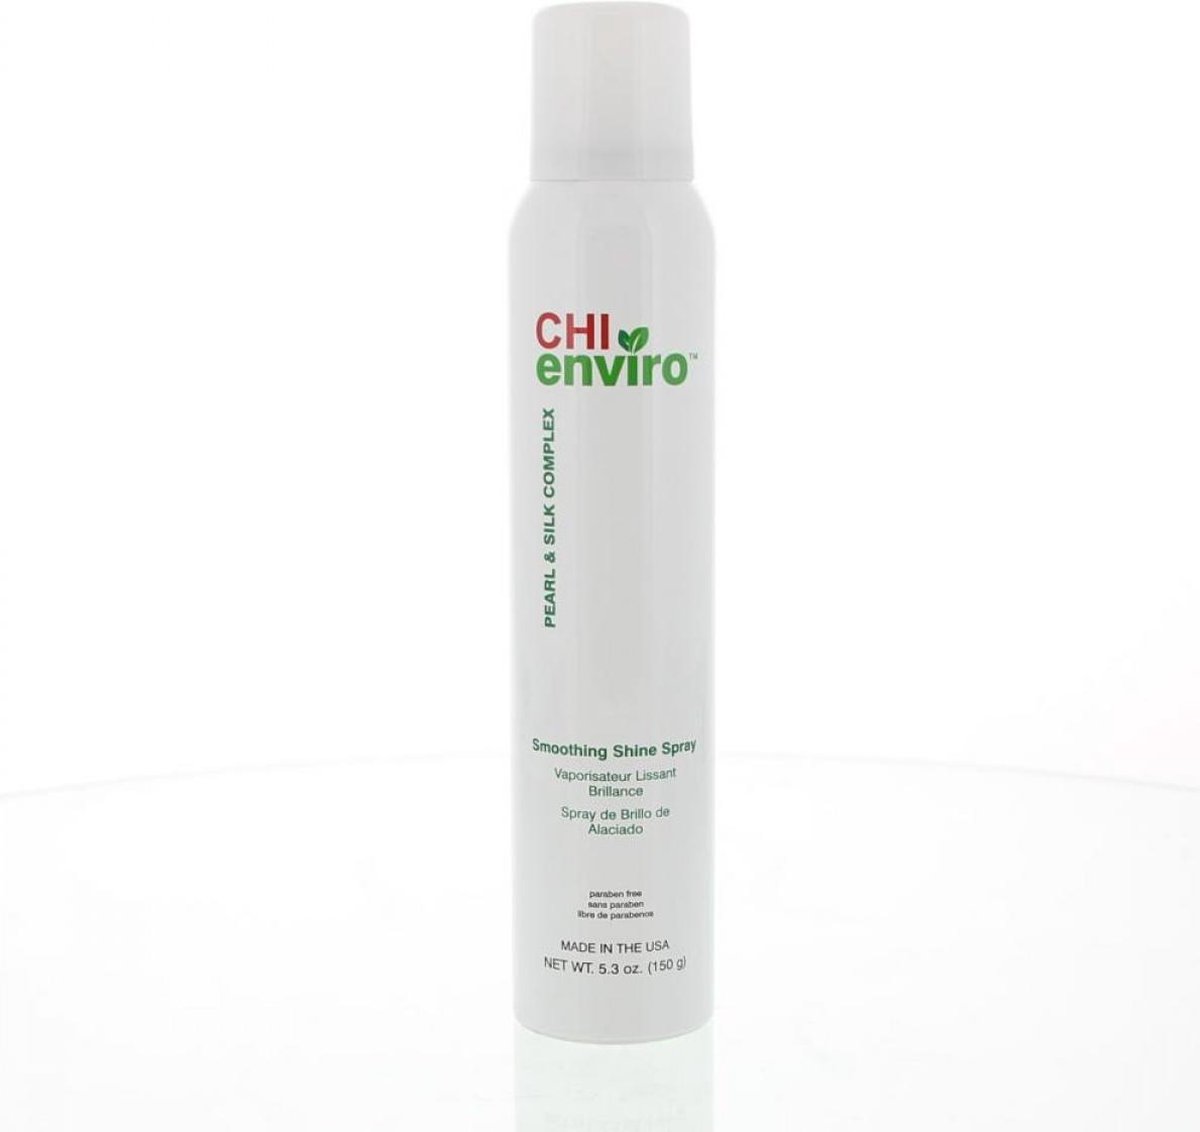 CHI Enviro Smoothing Shine Spray - 150 ml